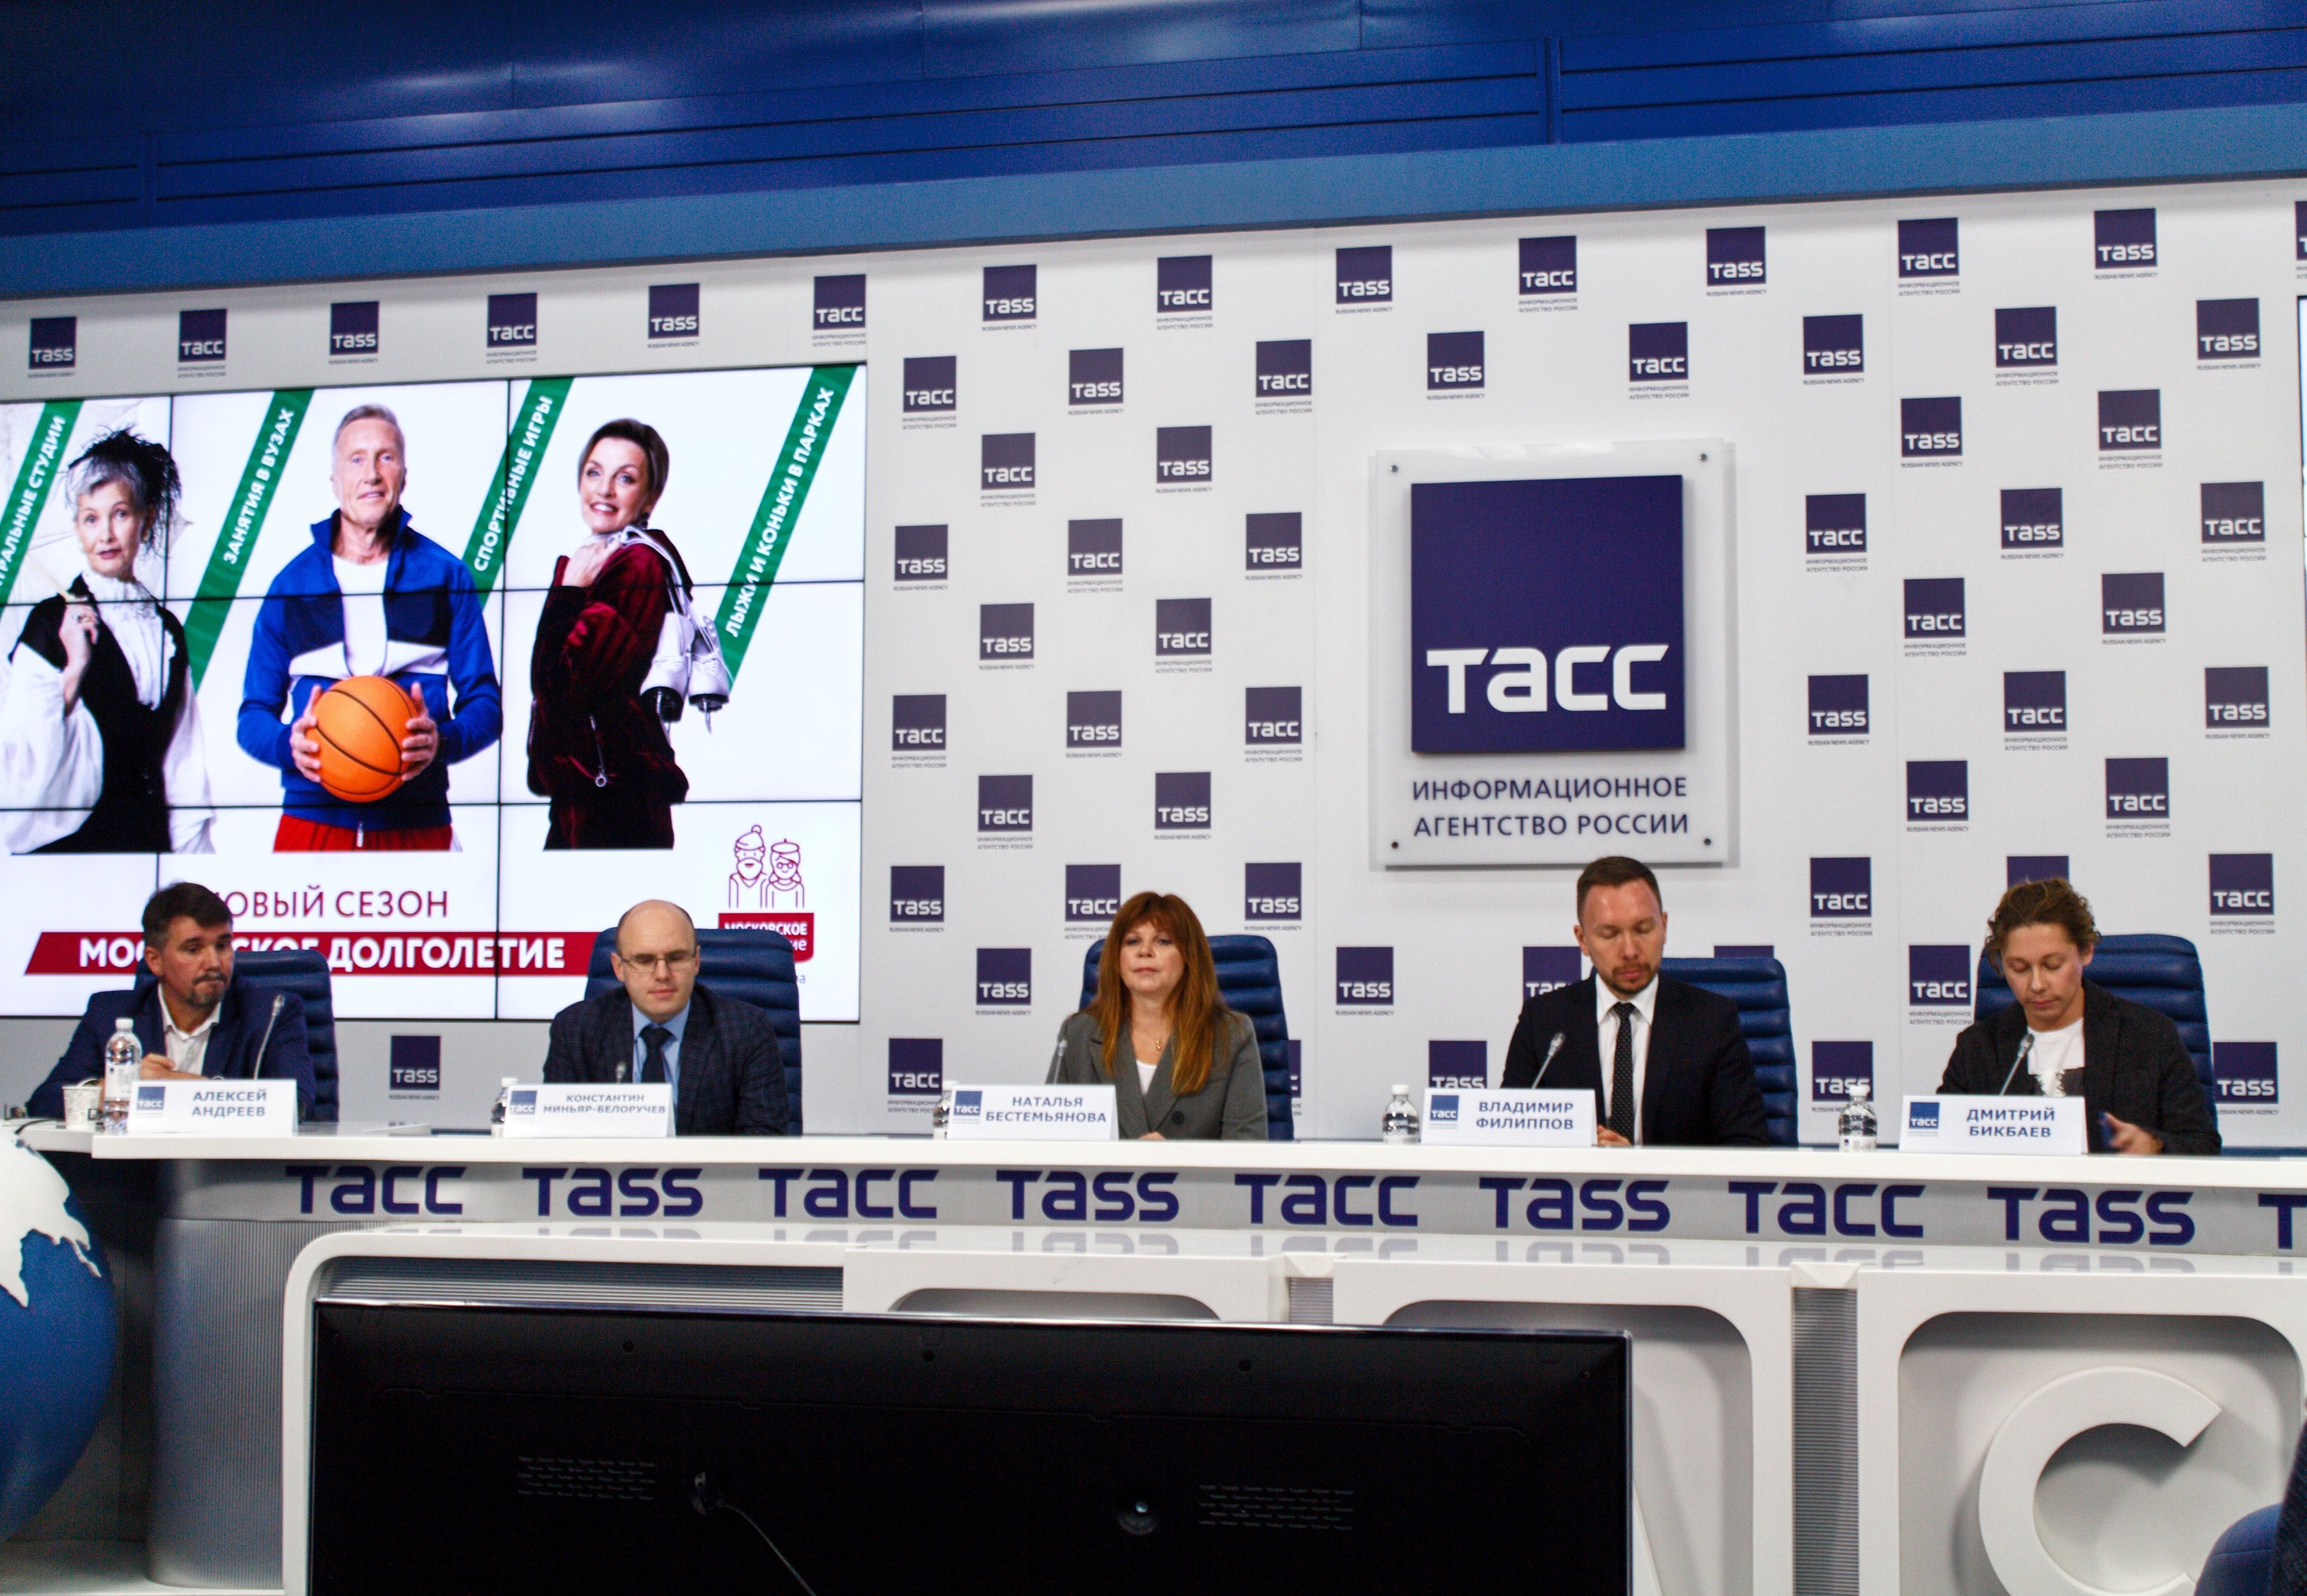 Пресс-конференция «Московское долголетие» состоялась в информационном агентстве «ТАСС»